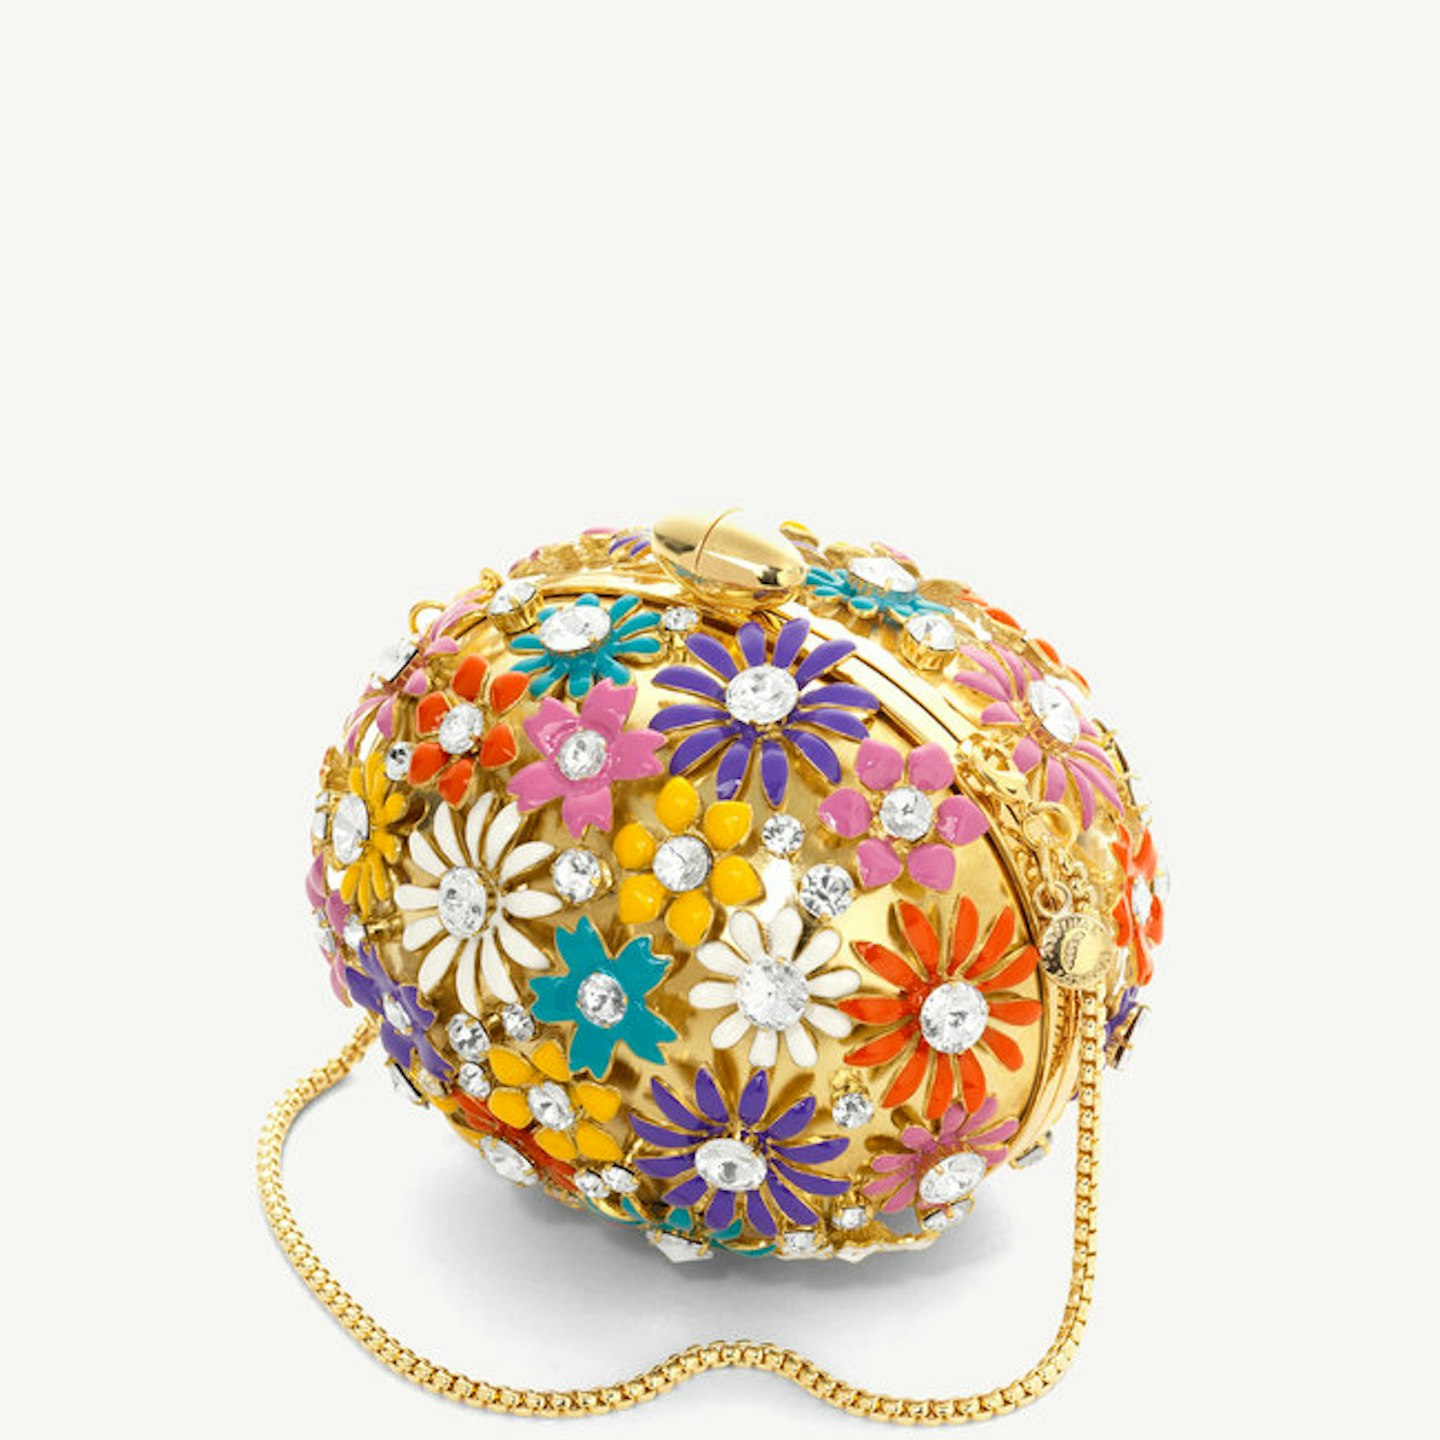 Embellished Floral Egg Clutch, £3,000